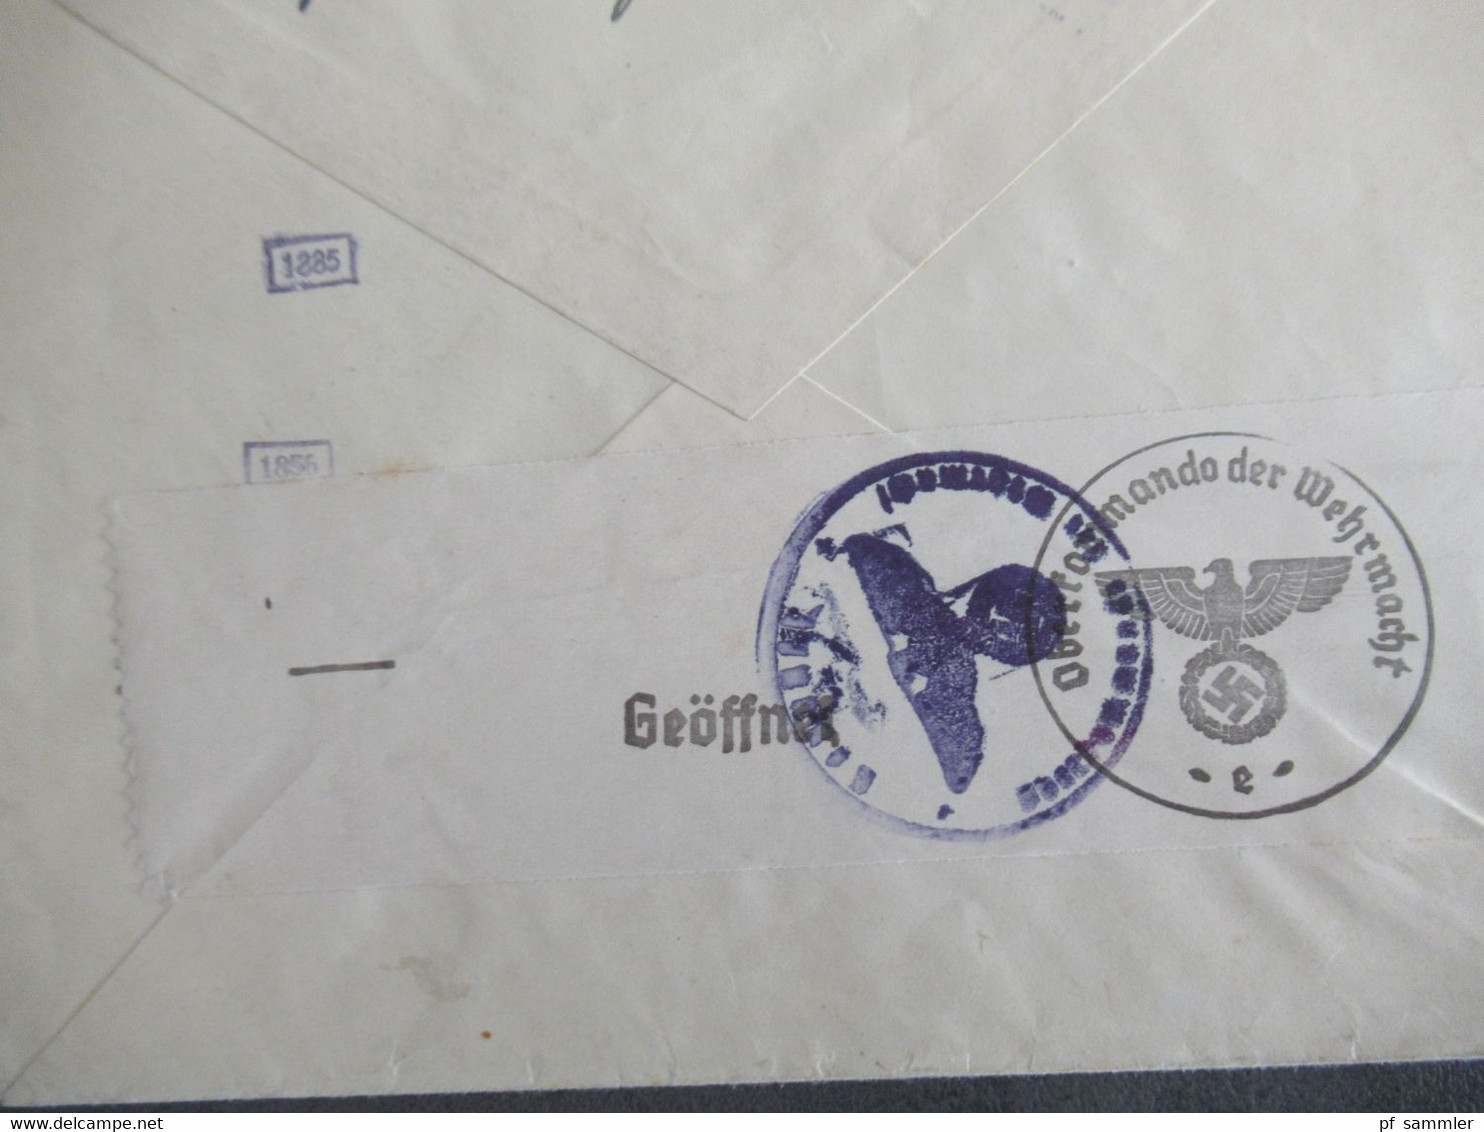 Böhmen Und Mähren Nr.32 EF Auslandsbrief Luzern Schweiz Mit OKW Zensur / Mehrfachzensur Zensurstempel / Zensurstreifen - Briefe U. Dokumente